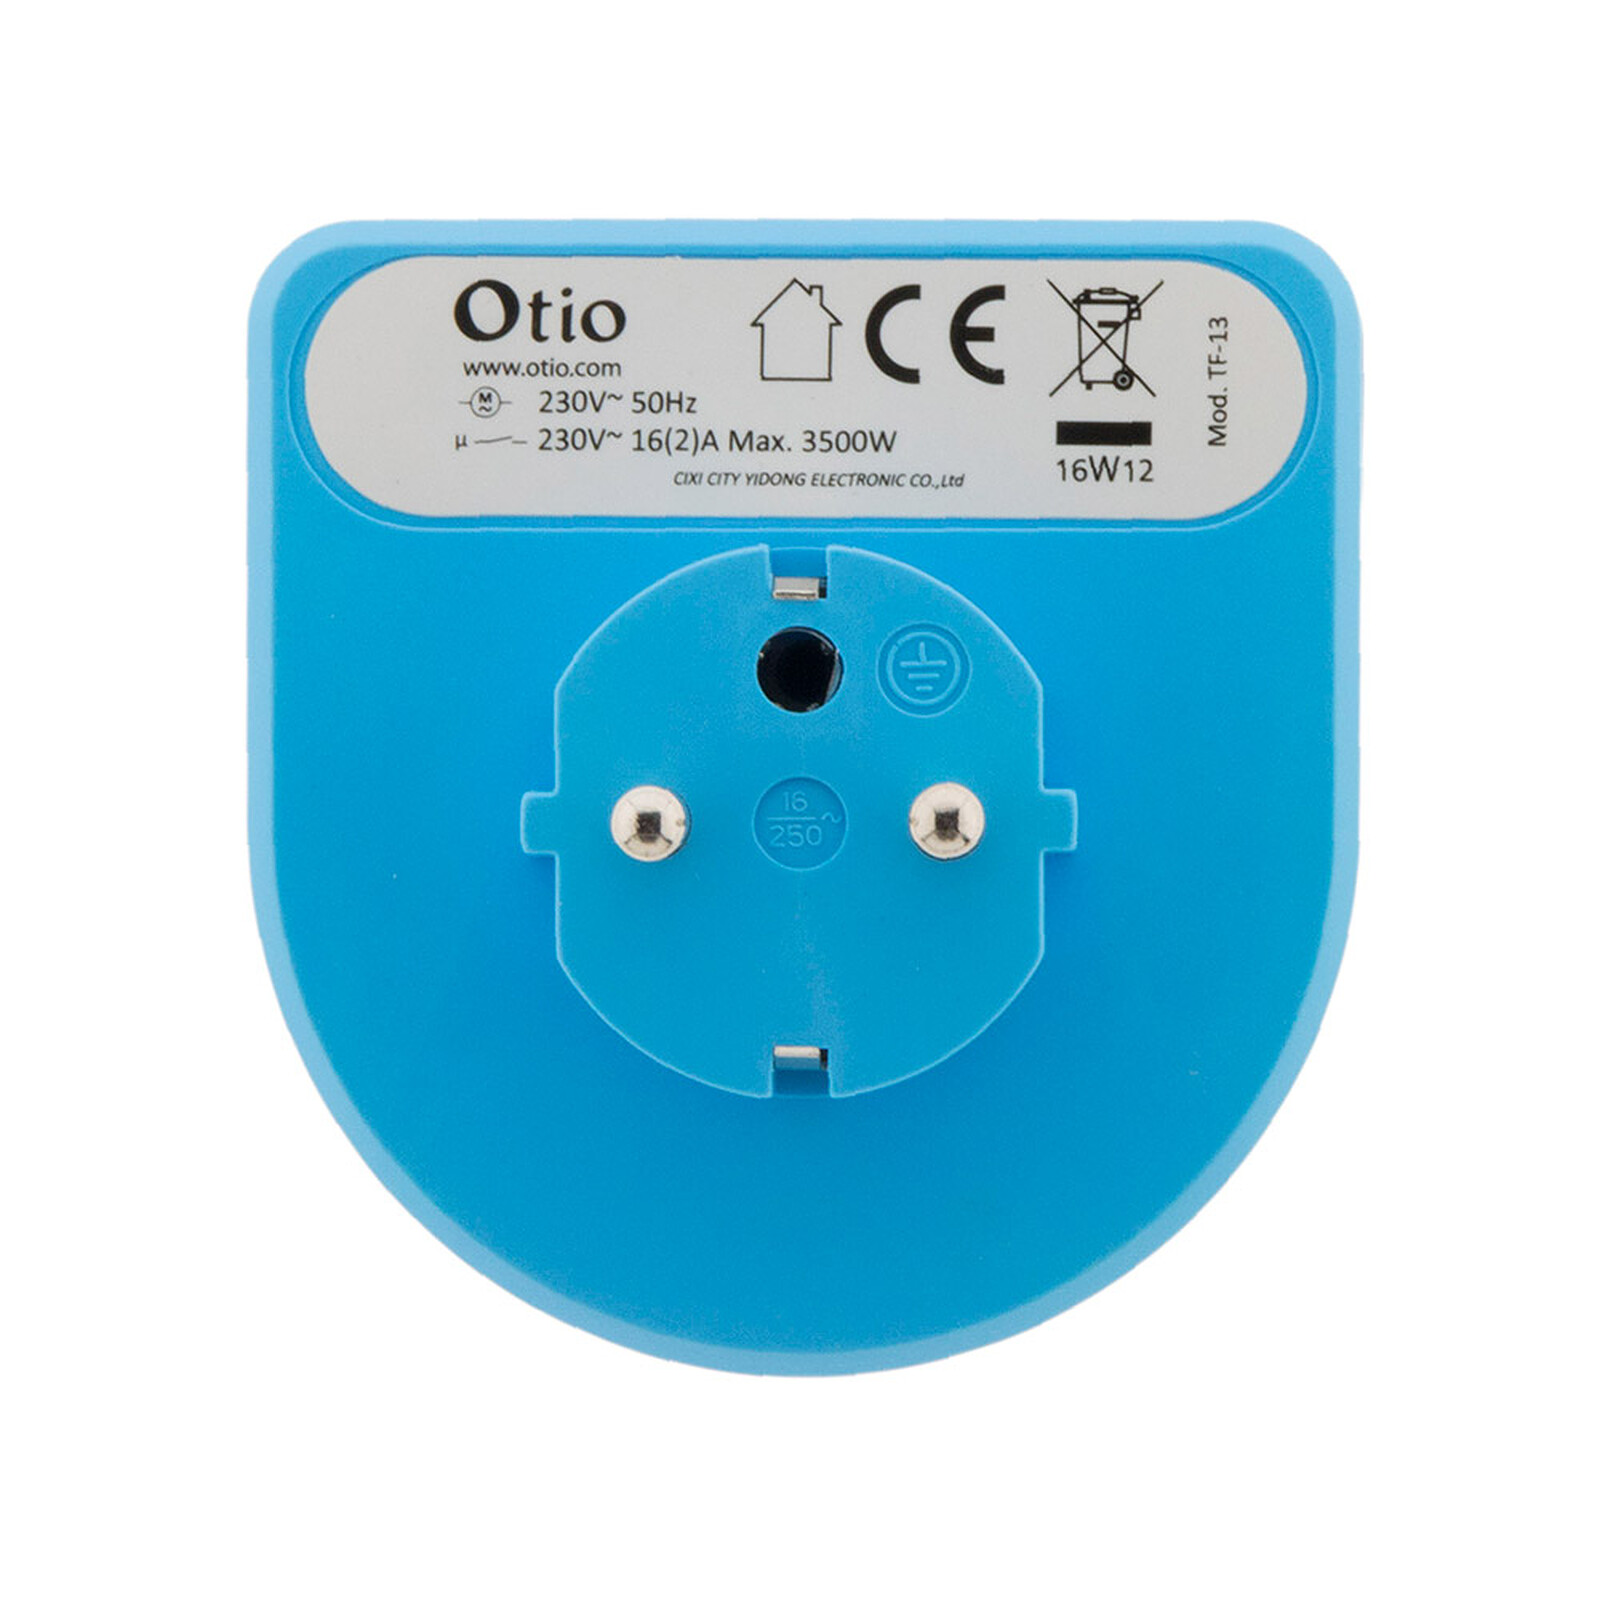 Programmateur mini journalier mécanique avec interrupteur à voyant - Otio